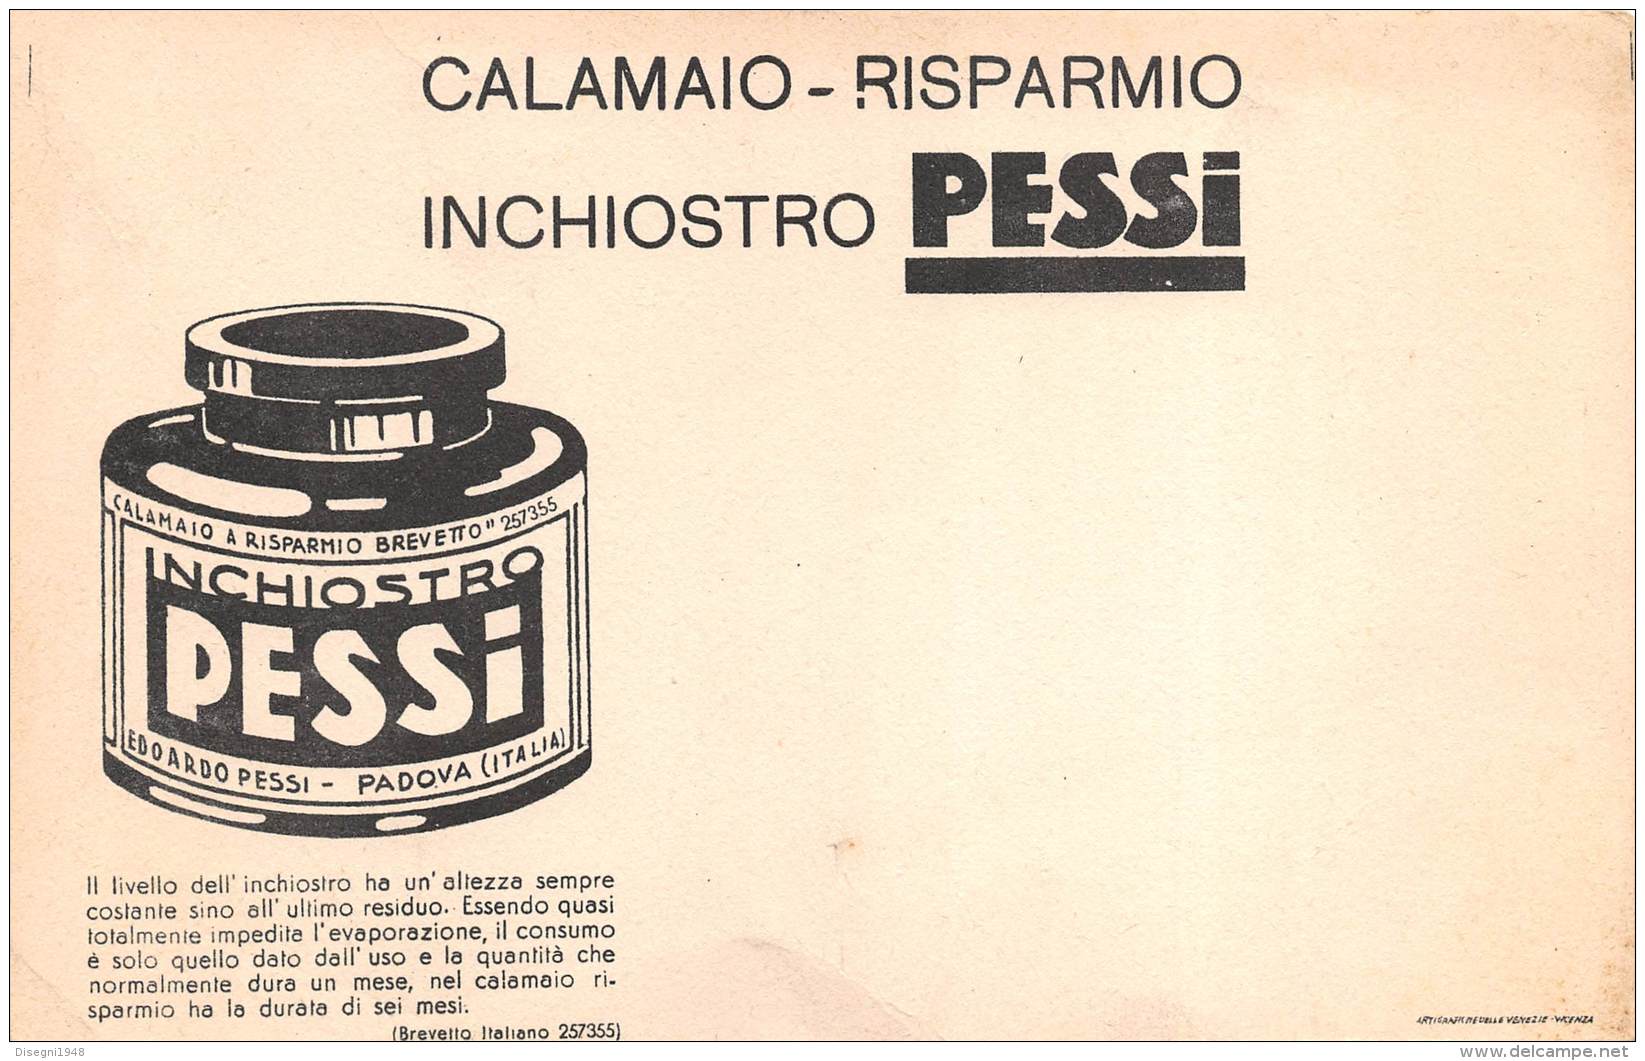 06814 "INCHIOSTRO PESSI - CALAMAIO RISPARMIO" CARTA ASSORB. ORIGINALE - Stationeries (flat Articles)